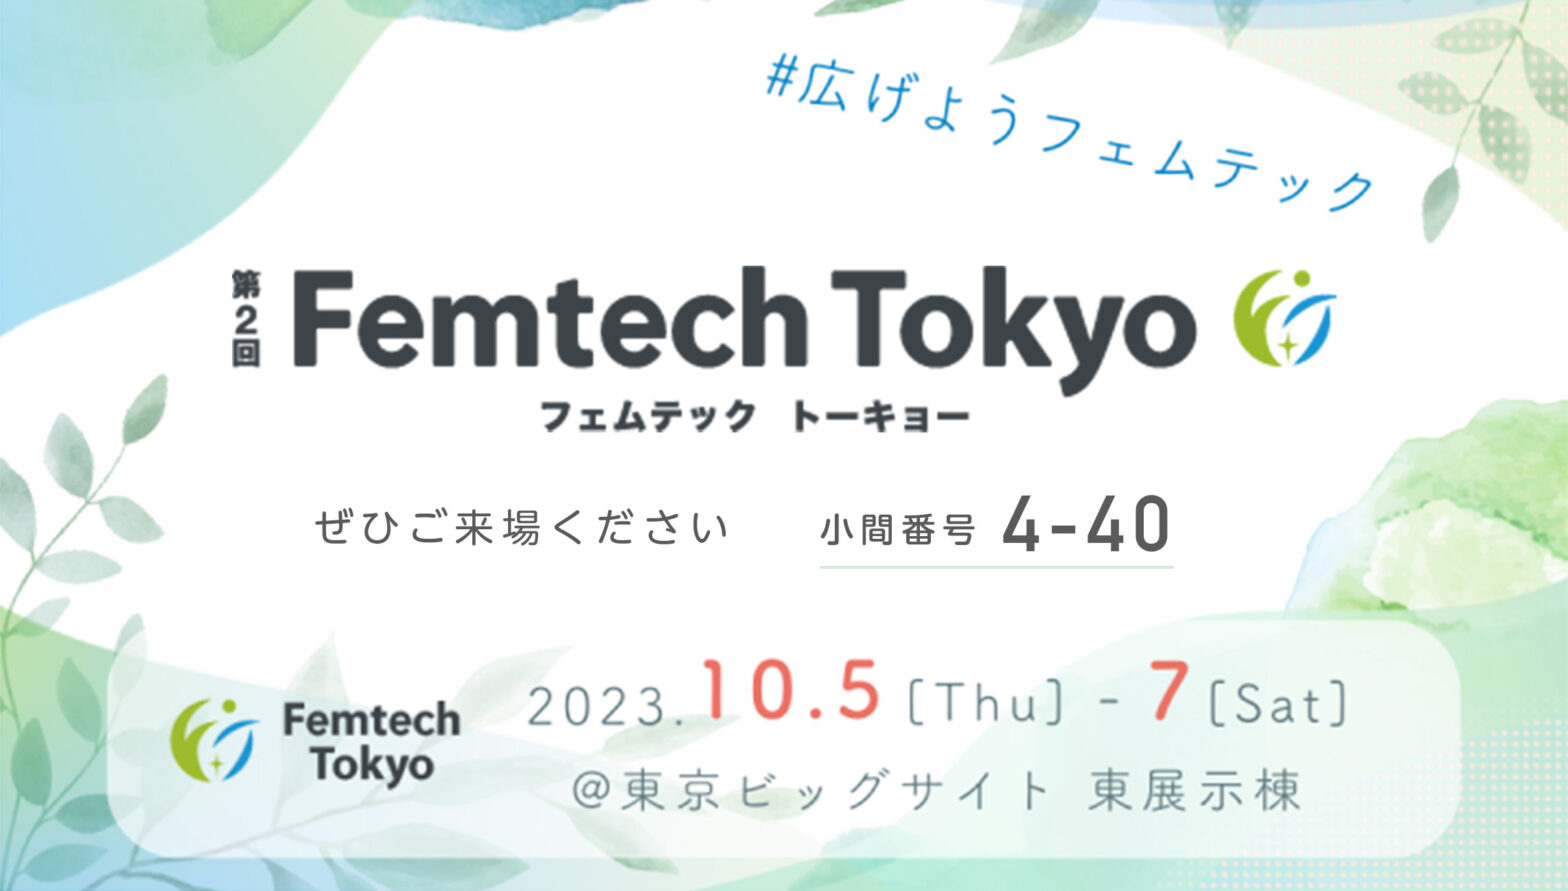 ハナミスイは第２回Femtech Tokyoに大規模ブースで出展します。